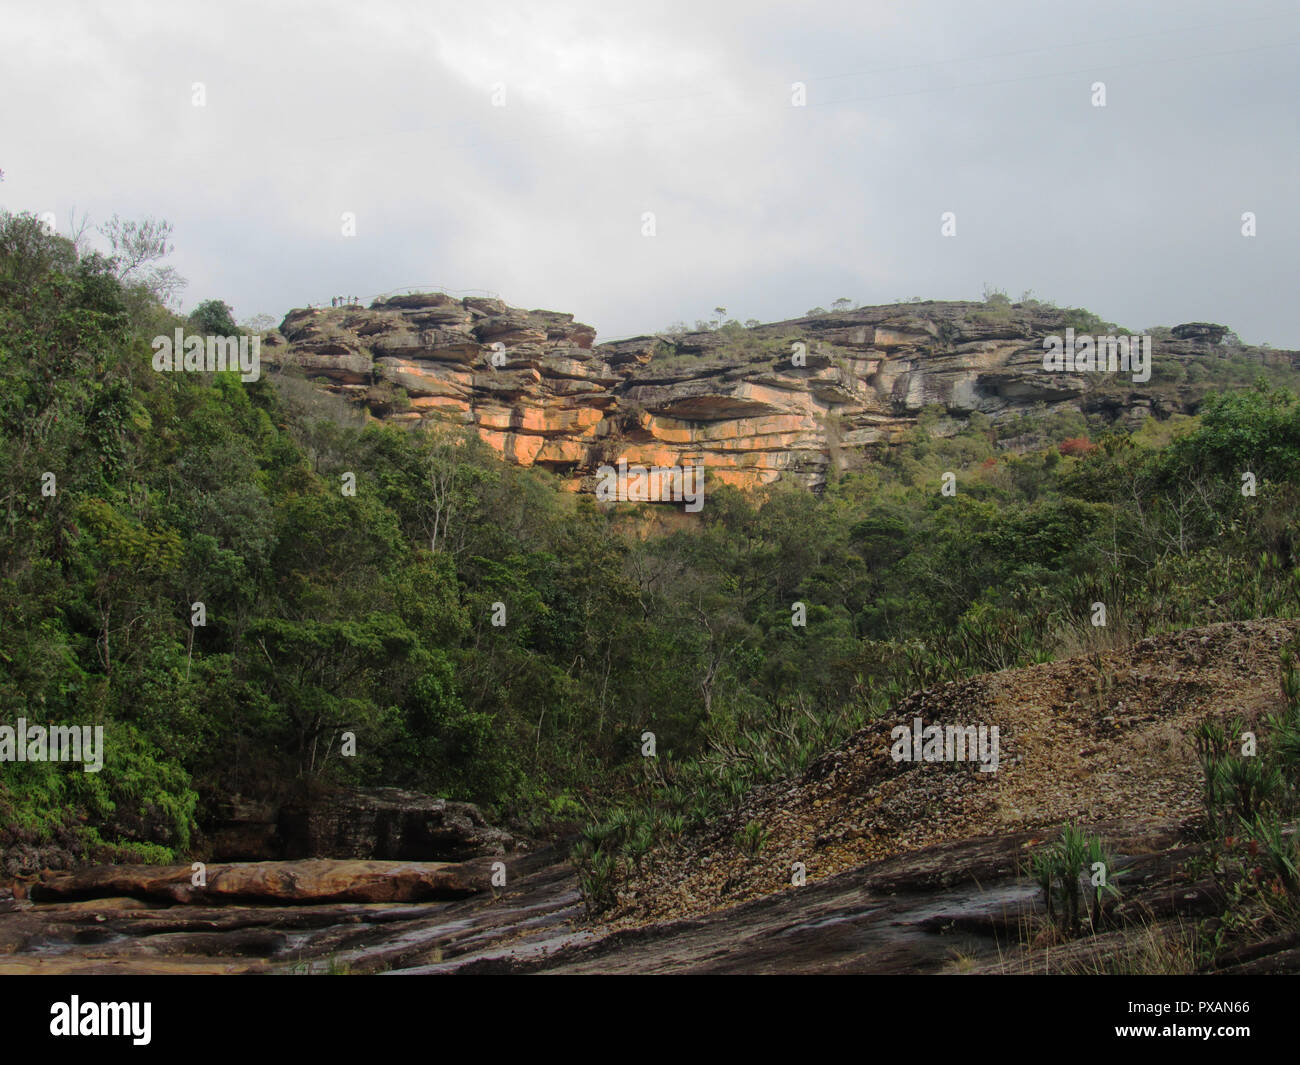 Vista do Paredão rochoso Cachoeira das das Andorinhas, parque das Andorinhas Ouro Preto - MG. Foto de stock